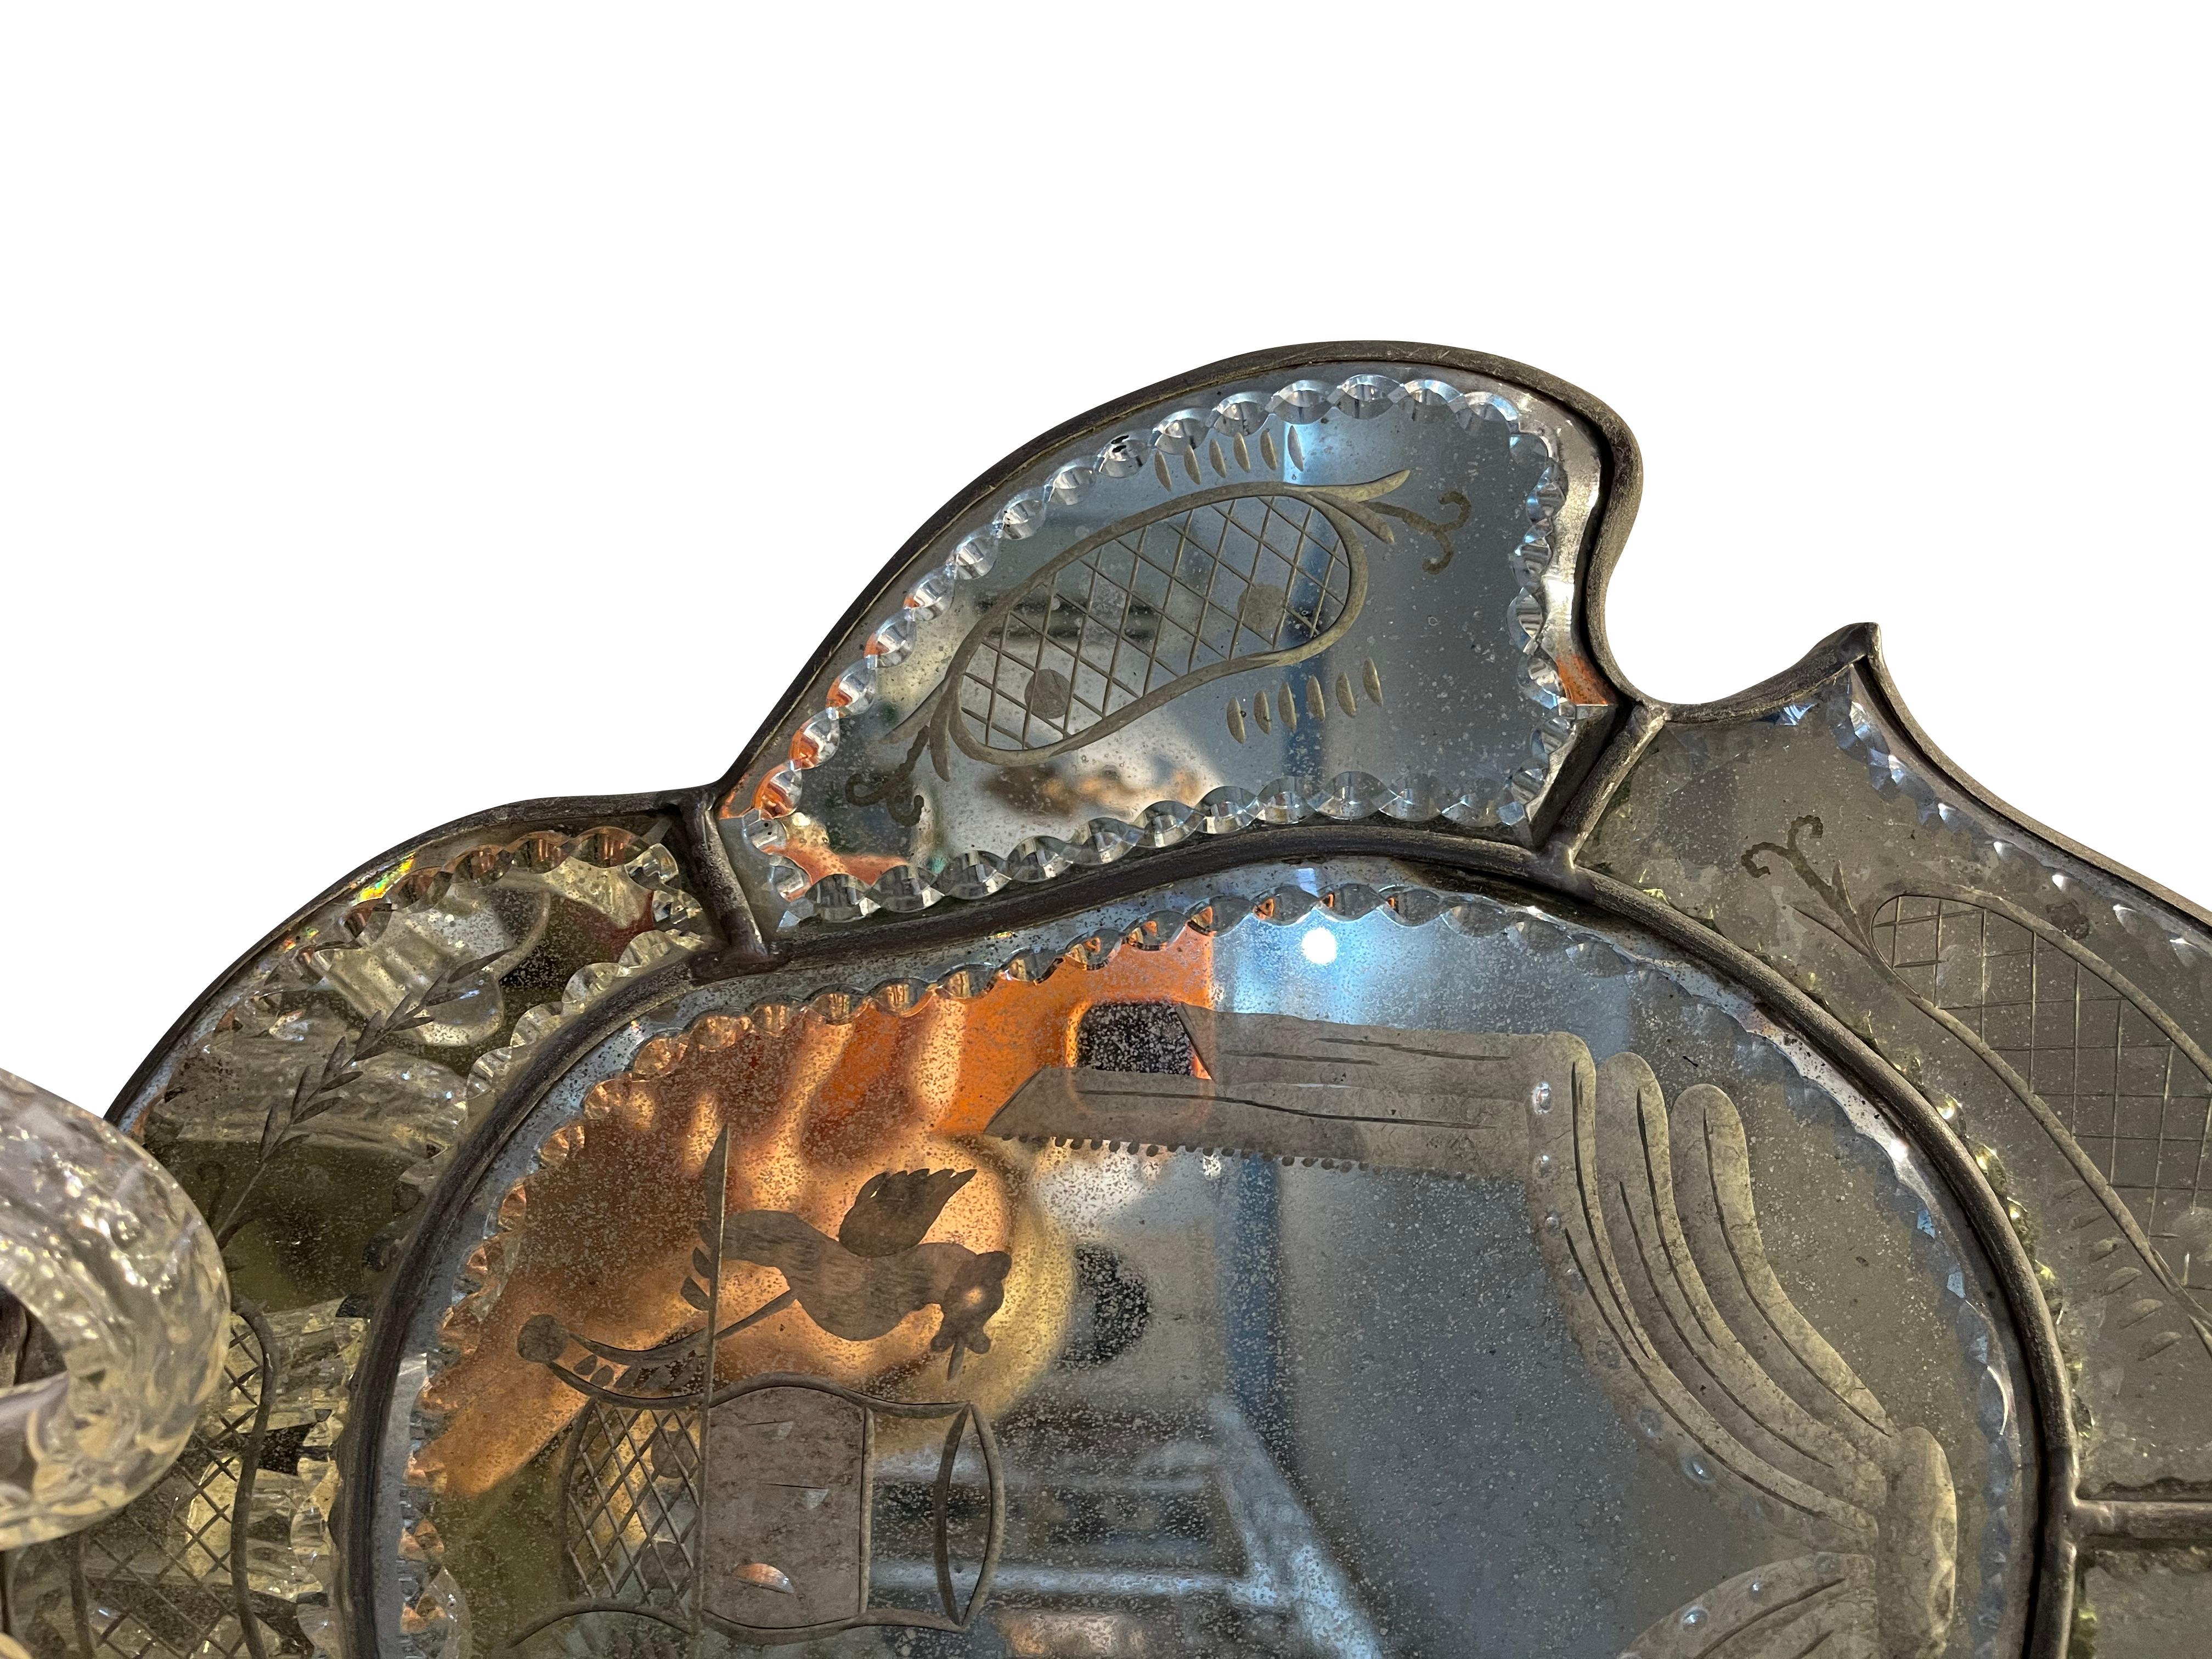 Anciennes appliques vénitiennes à bougies gravées à deux bras avec miroirs à l'arrière.  Joli miroir antique scobé gravé à la main avec un médaillon central entouré de six panneaux autour du médaillon central et d'un gracieux fleuron en miroir